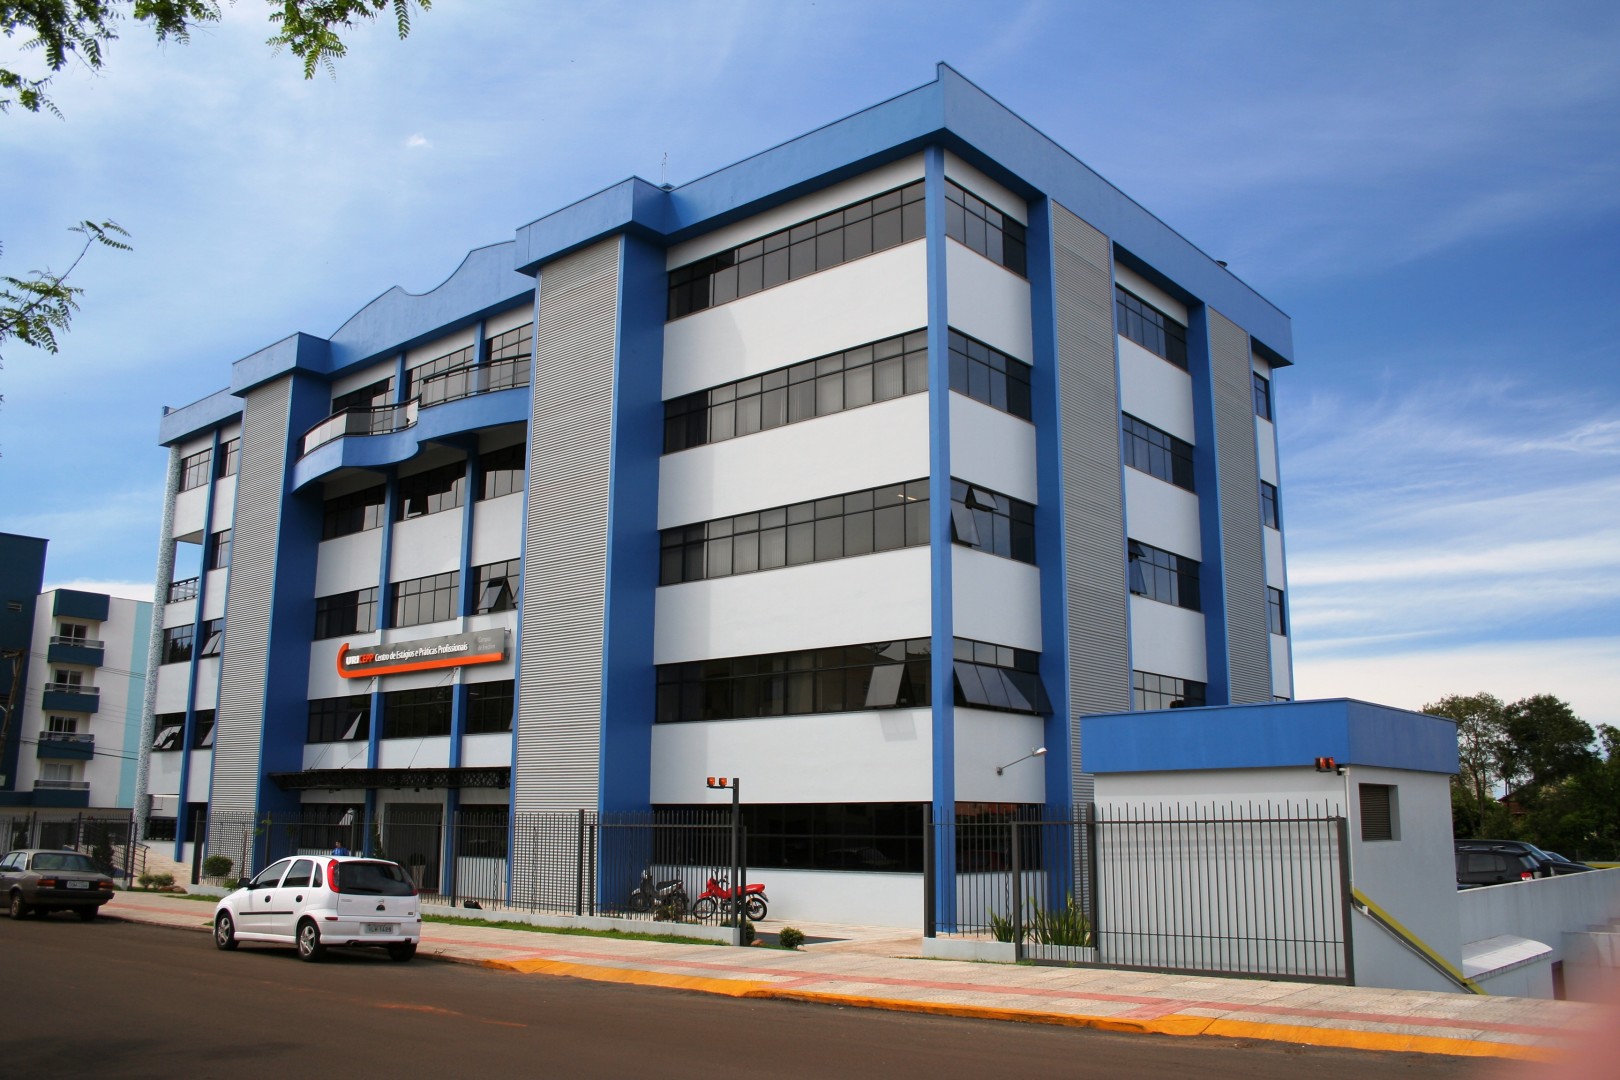 Clnica est localizada no URICEPP, na Rua Maranho